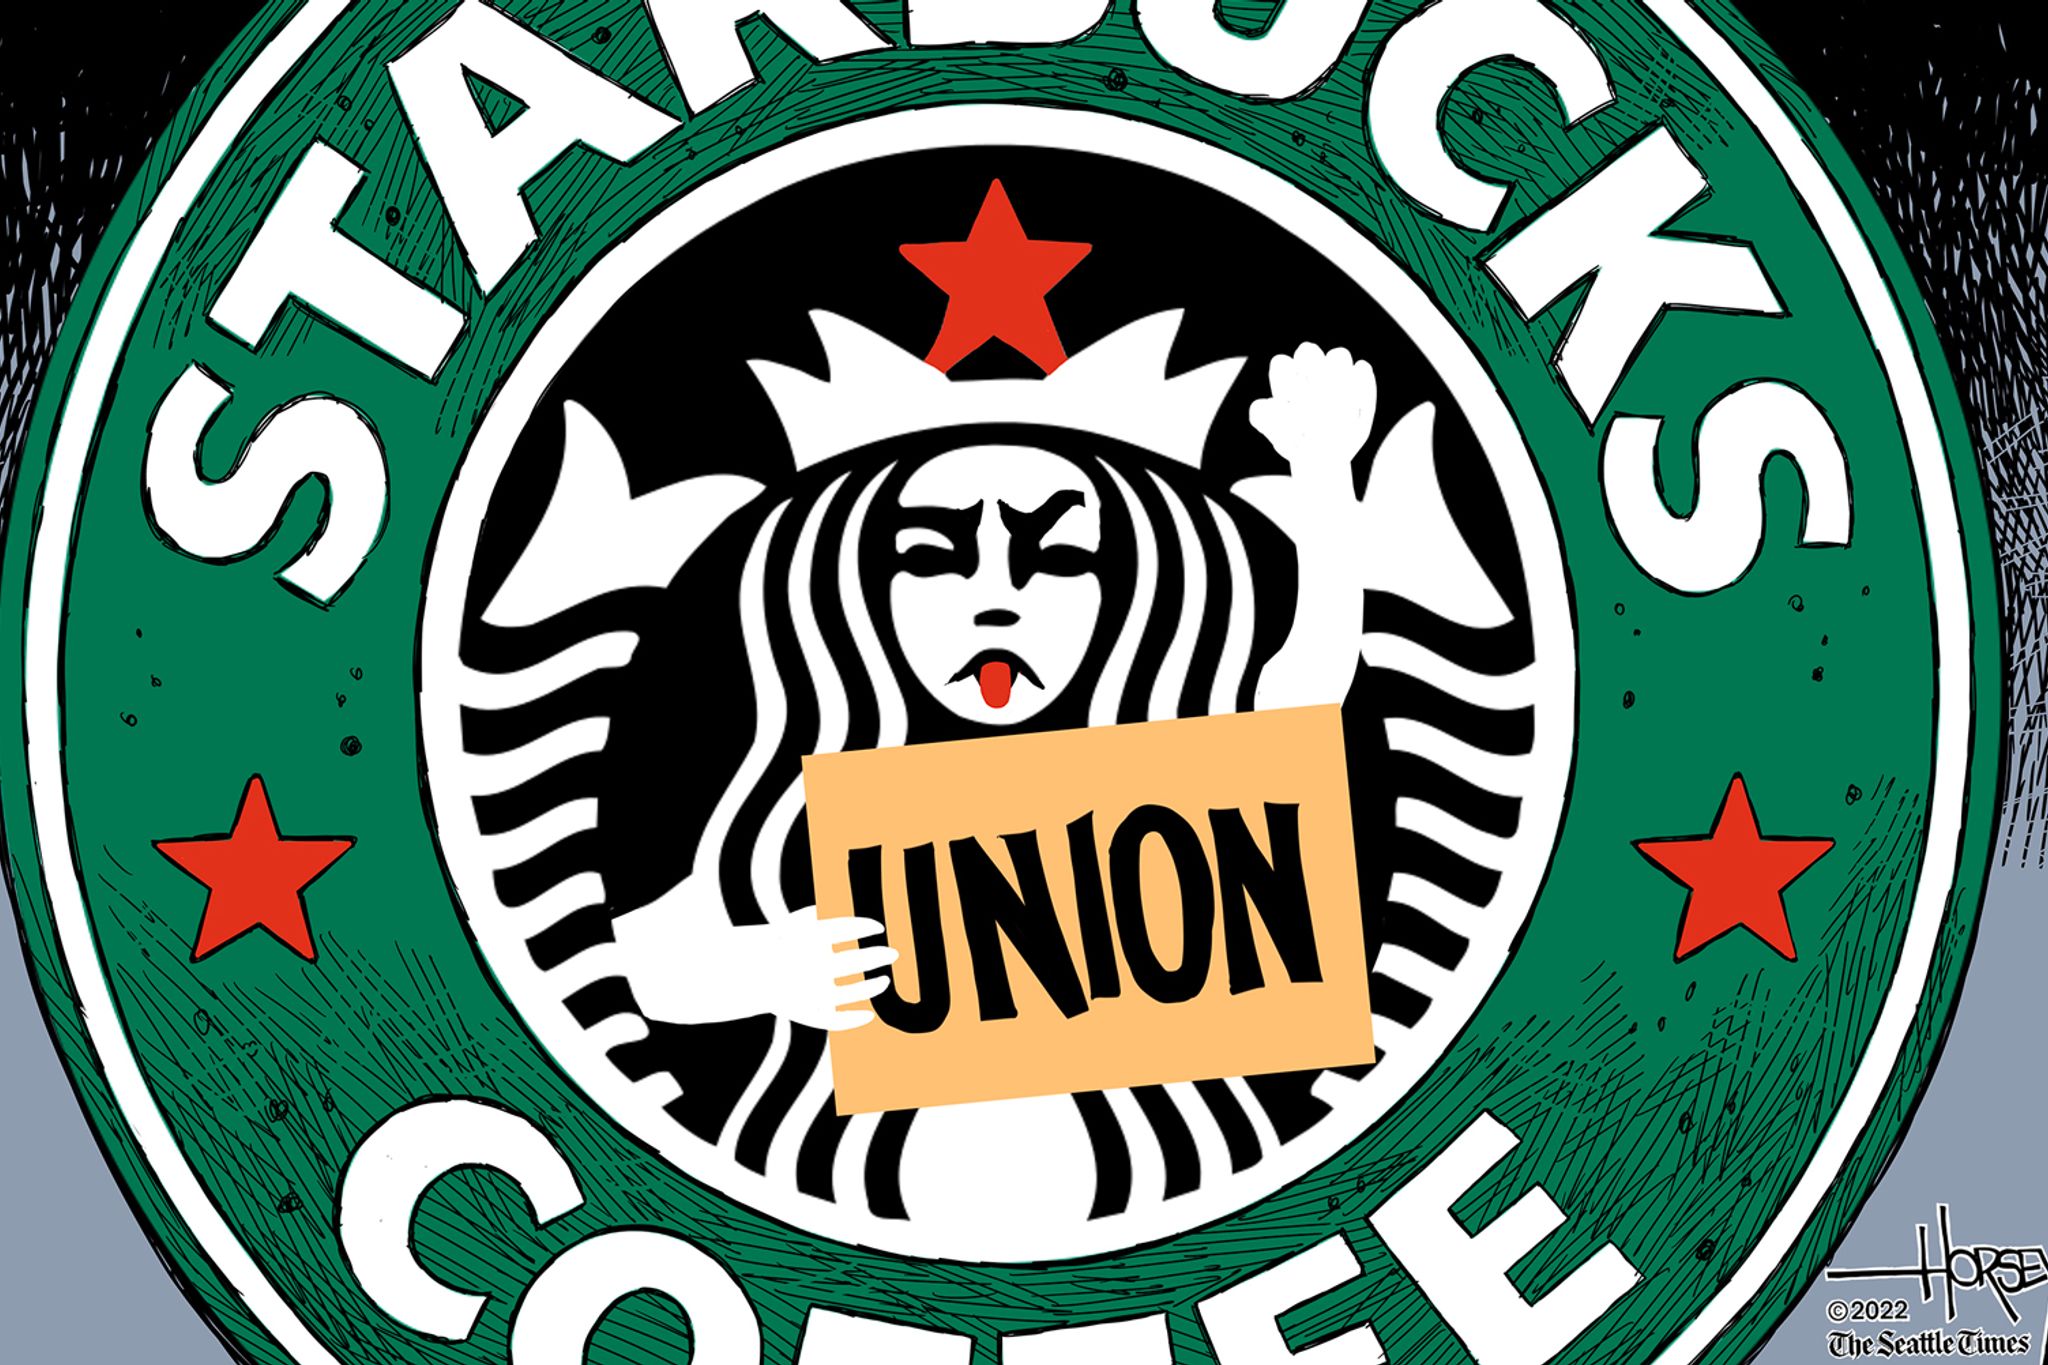 https://images.seattletimes.com/wp-content/uploads/2022/03/Starbucks-Union-ONLINE-COLOR.jpg?d=2048x1365